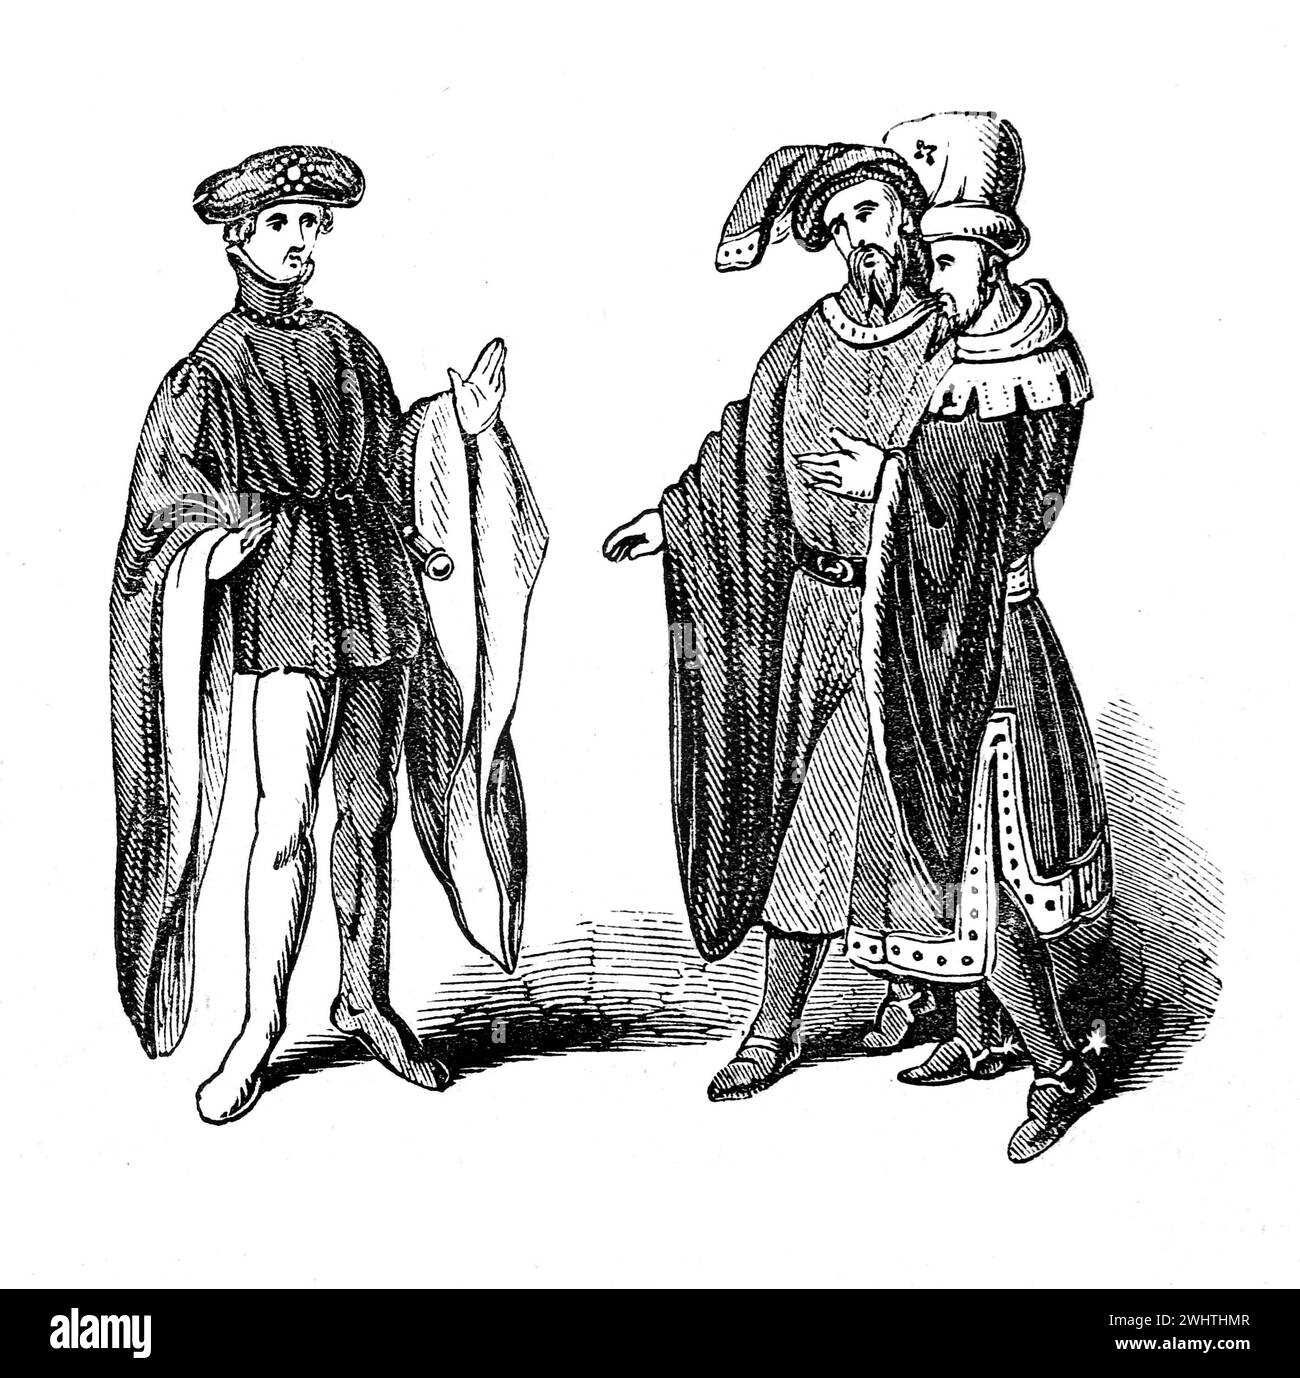 Trajes masculinos en la época de Enrique VI de Inglaterra. Ilustración en blanco y negro de la "vieja Inglaterra" publicada por James Sangster en 1860. Foto de stock